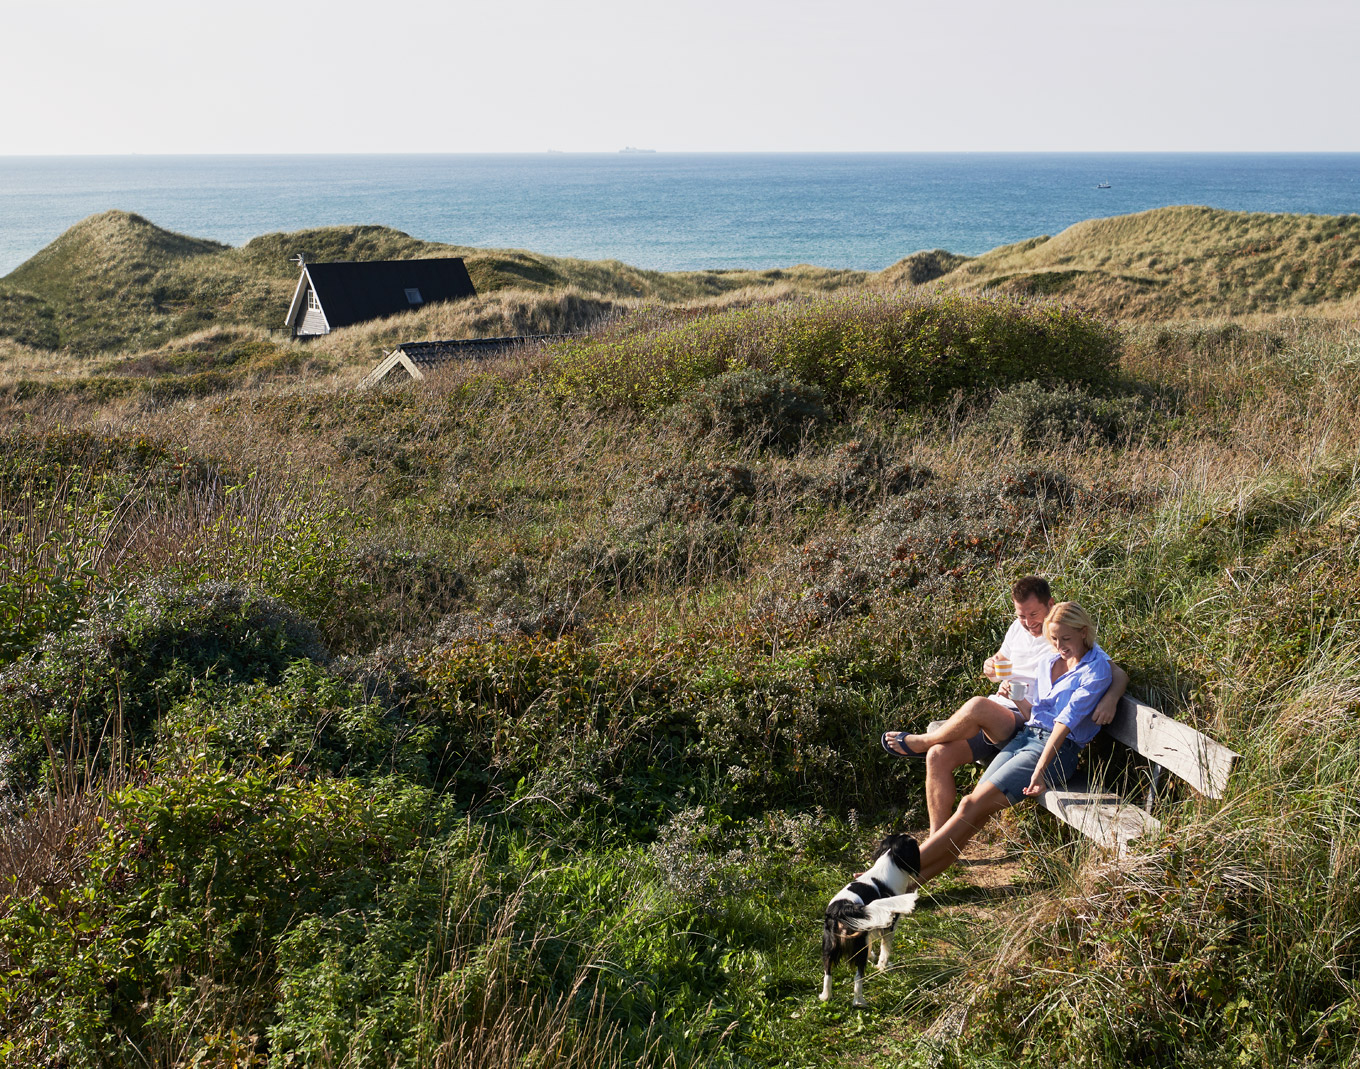 Ferienhaus mit Hund für den Urlaub in Dänemark buchen